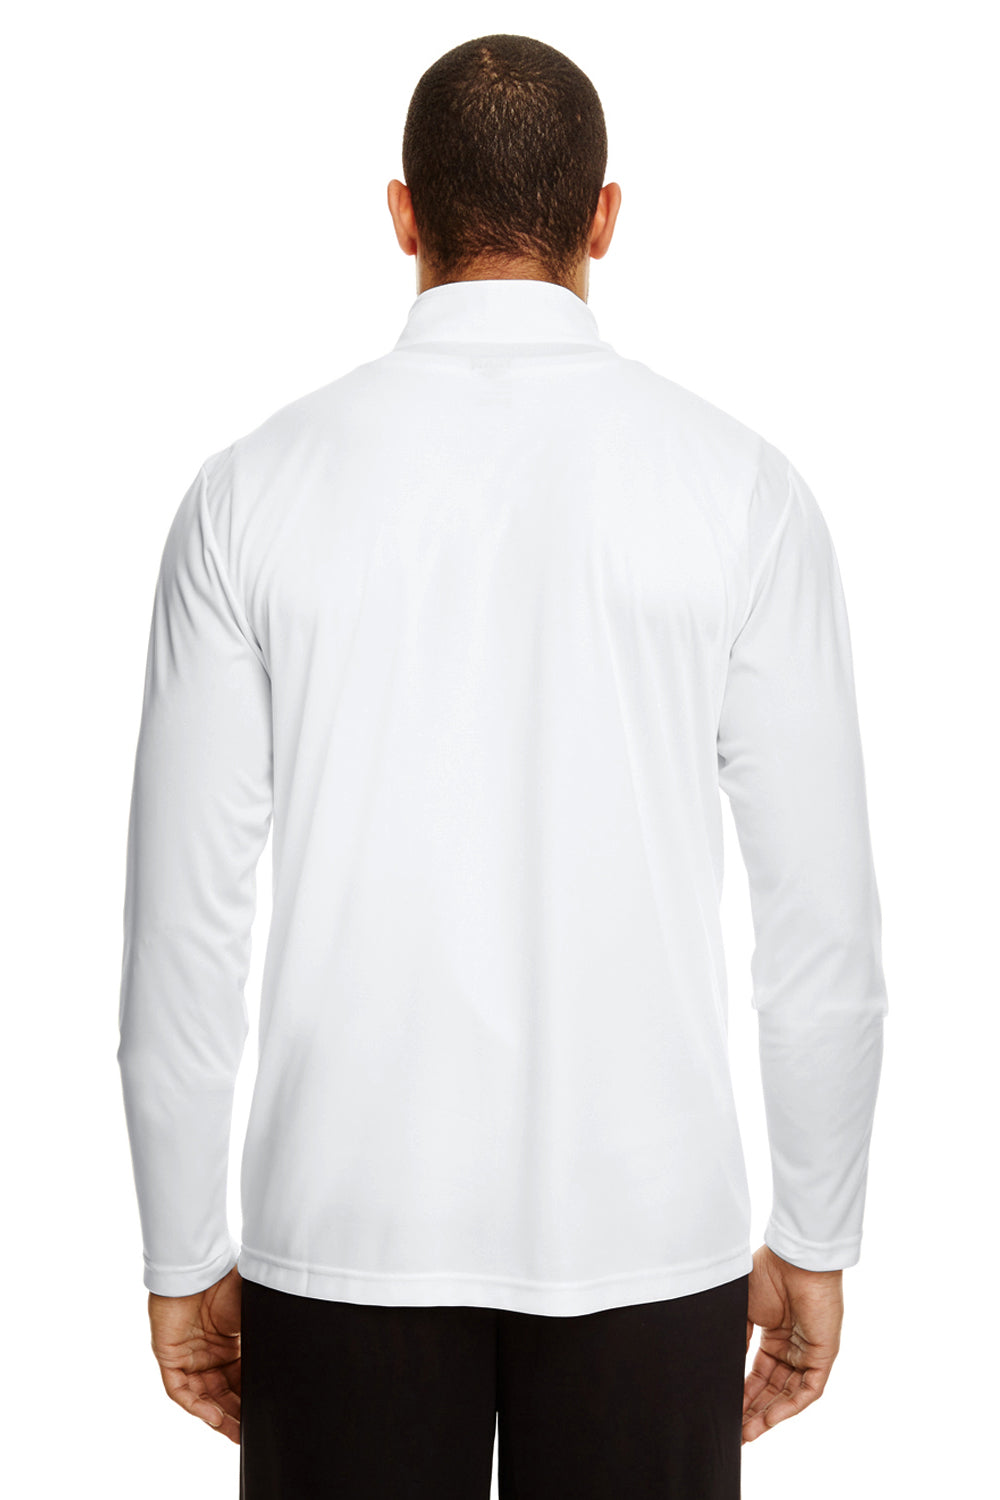 Team 365 TT31 Mens Zone Performance Moisture Wicking 1/4 Zip Sweatshirt White Back